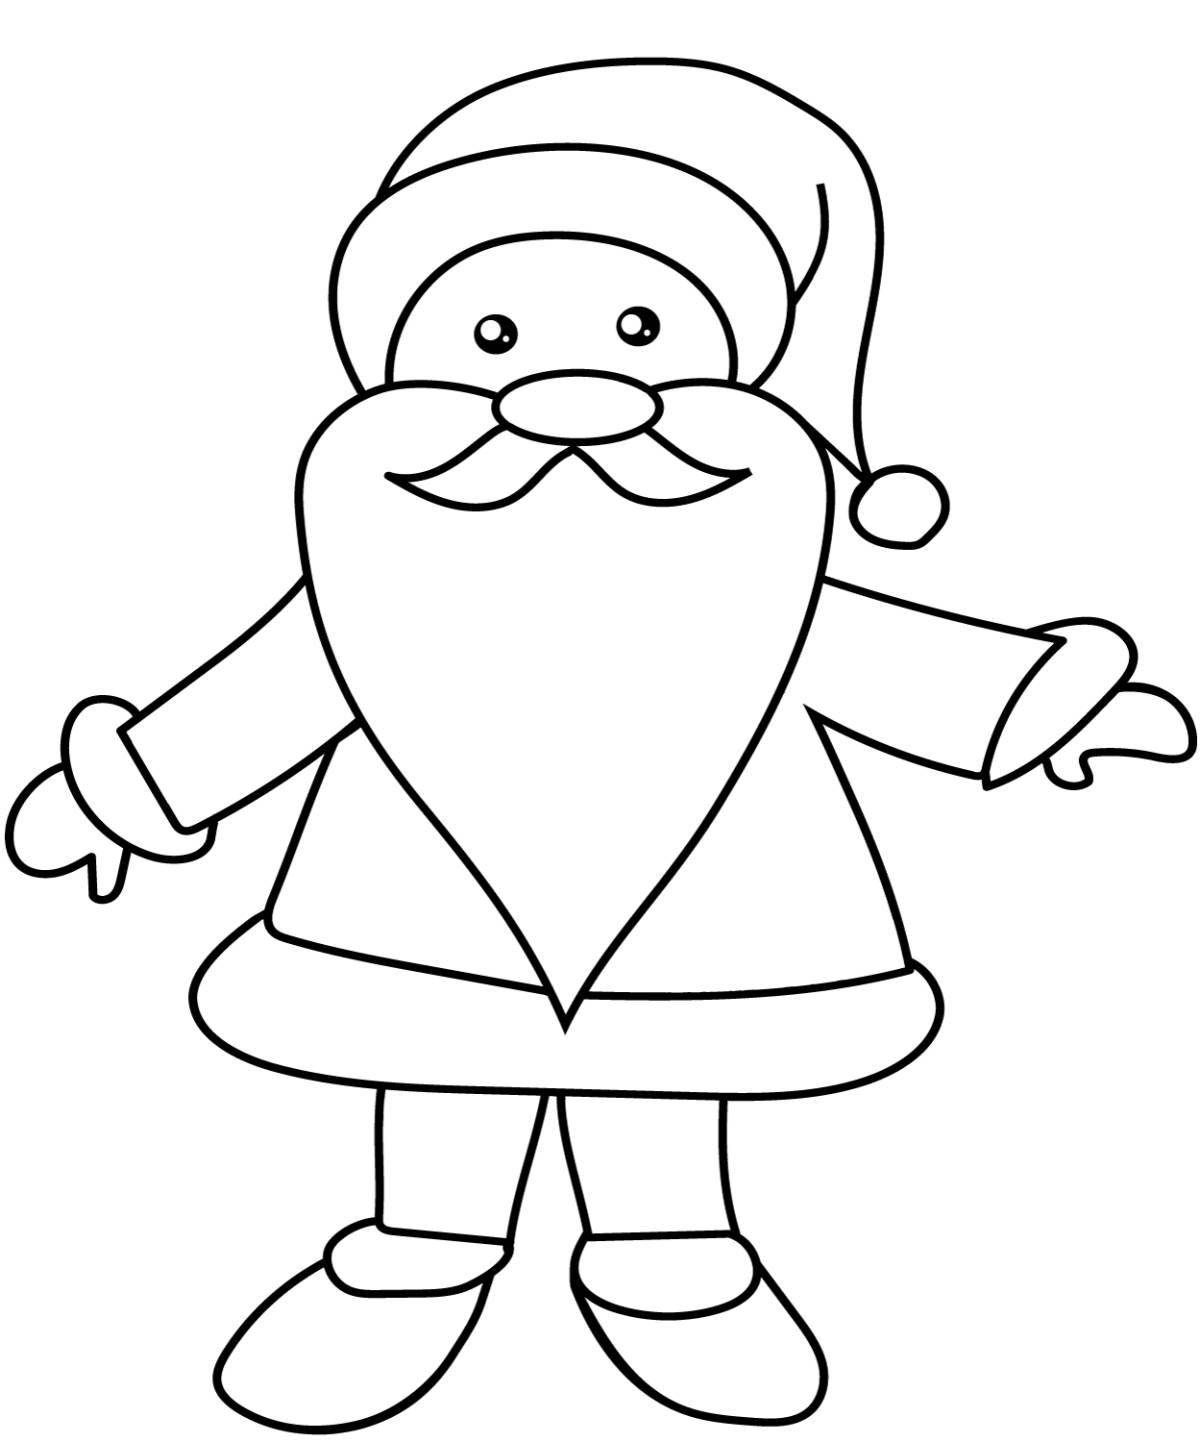 Fun coloring santa claus for kids